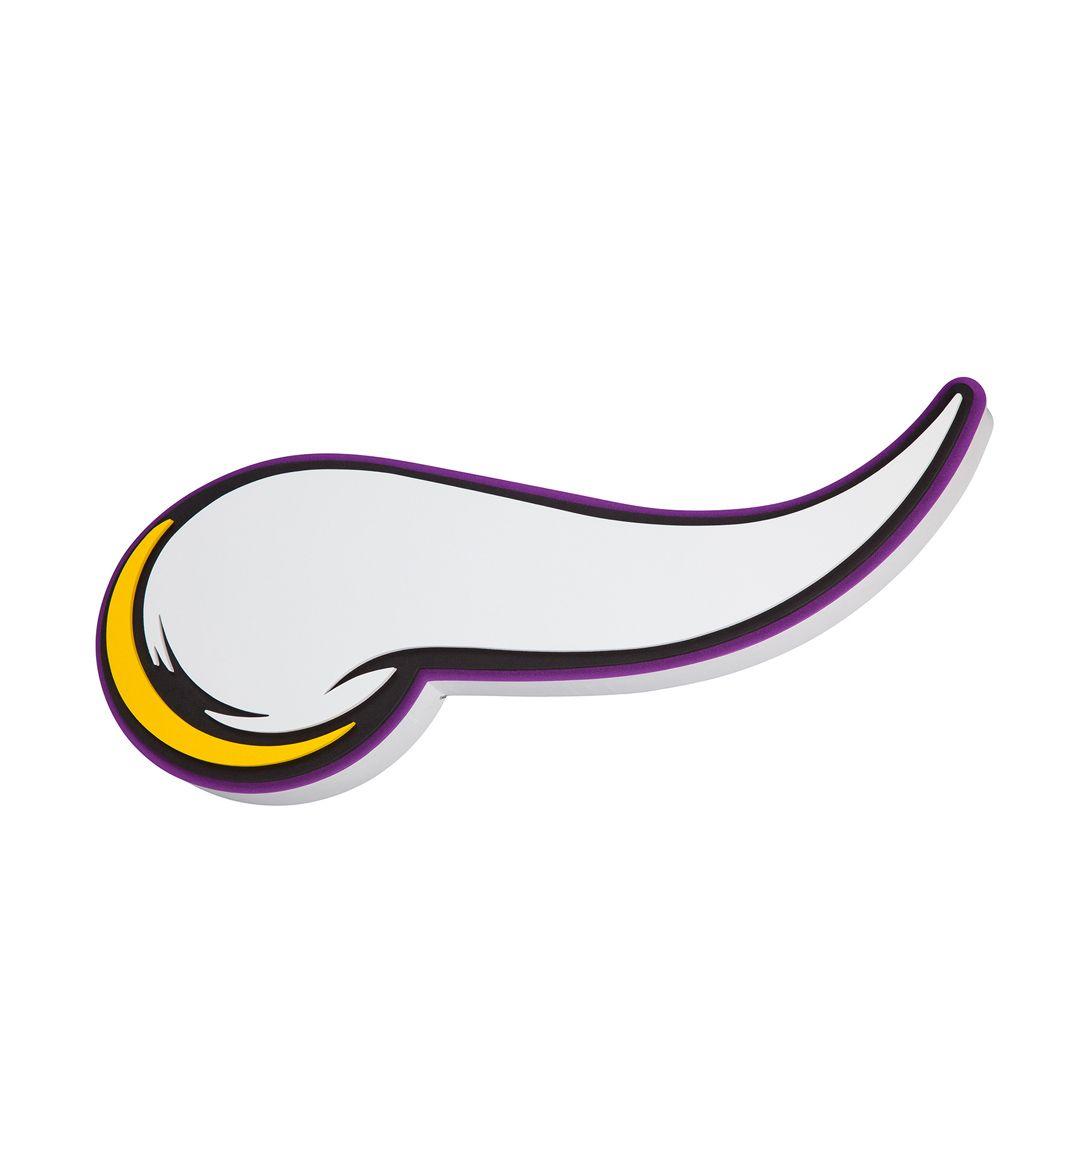 Viking Horn Logo - Officially NFL Licensed. Minnesota Vikings 3D Foam Sign